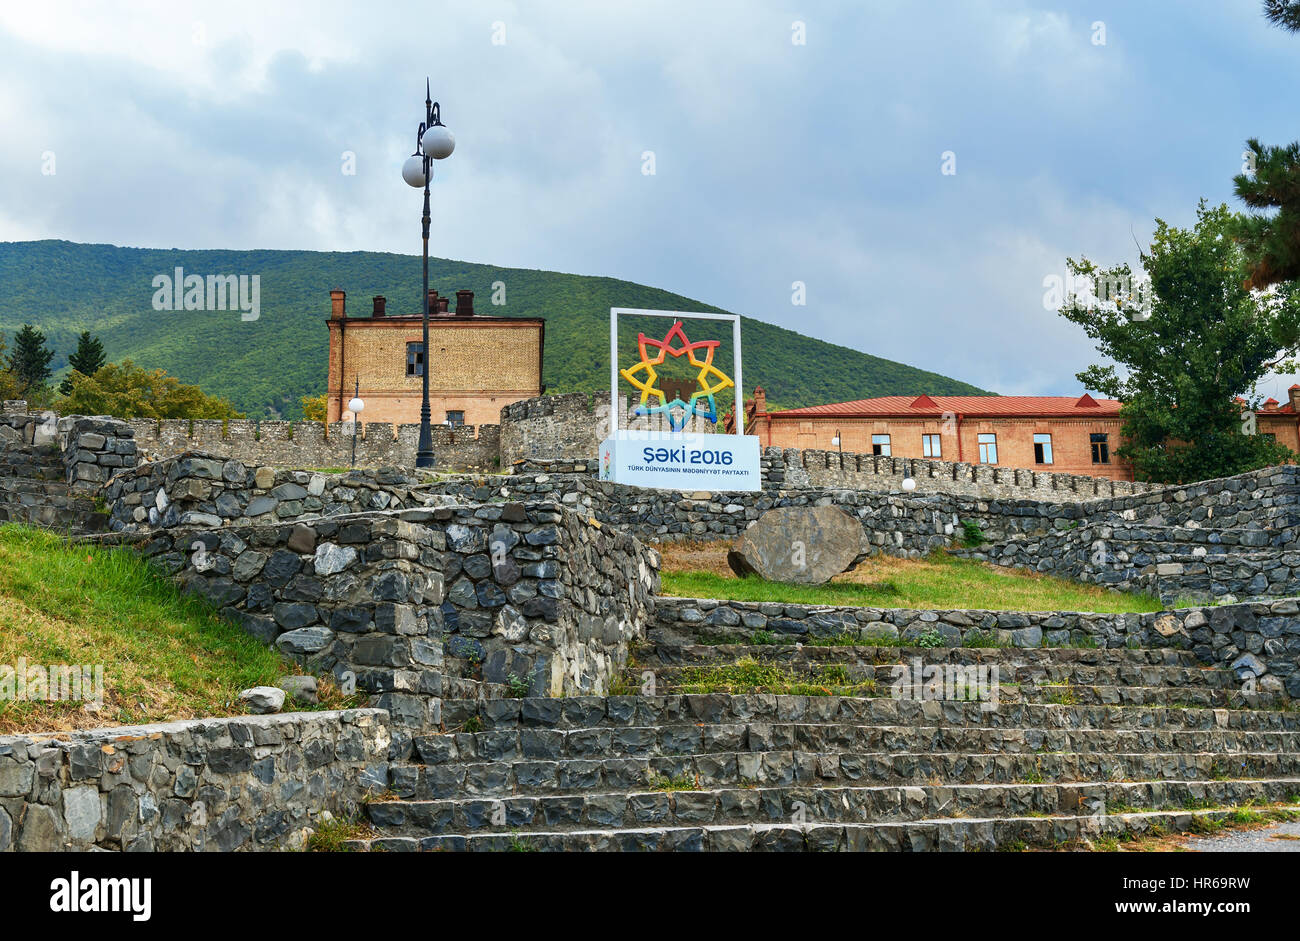 Sheki, Azerbaijan - September 13, 2016: Sign near fortress. Sheki - the cultural capital of the Turkic world in 2016 Stock Photo